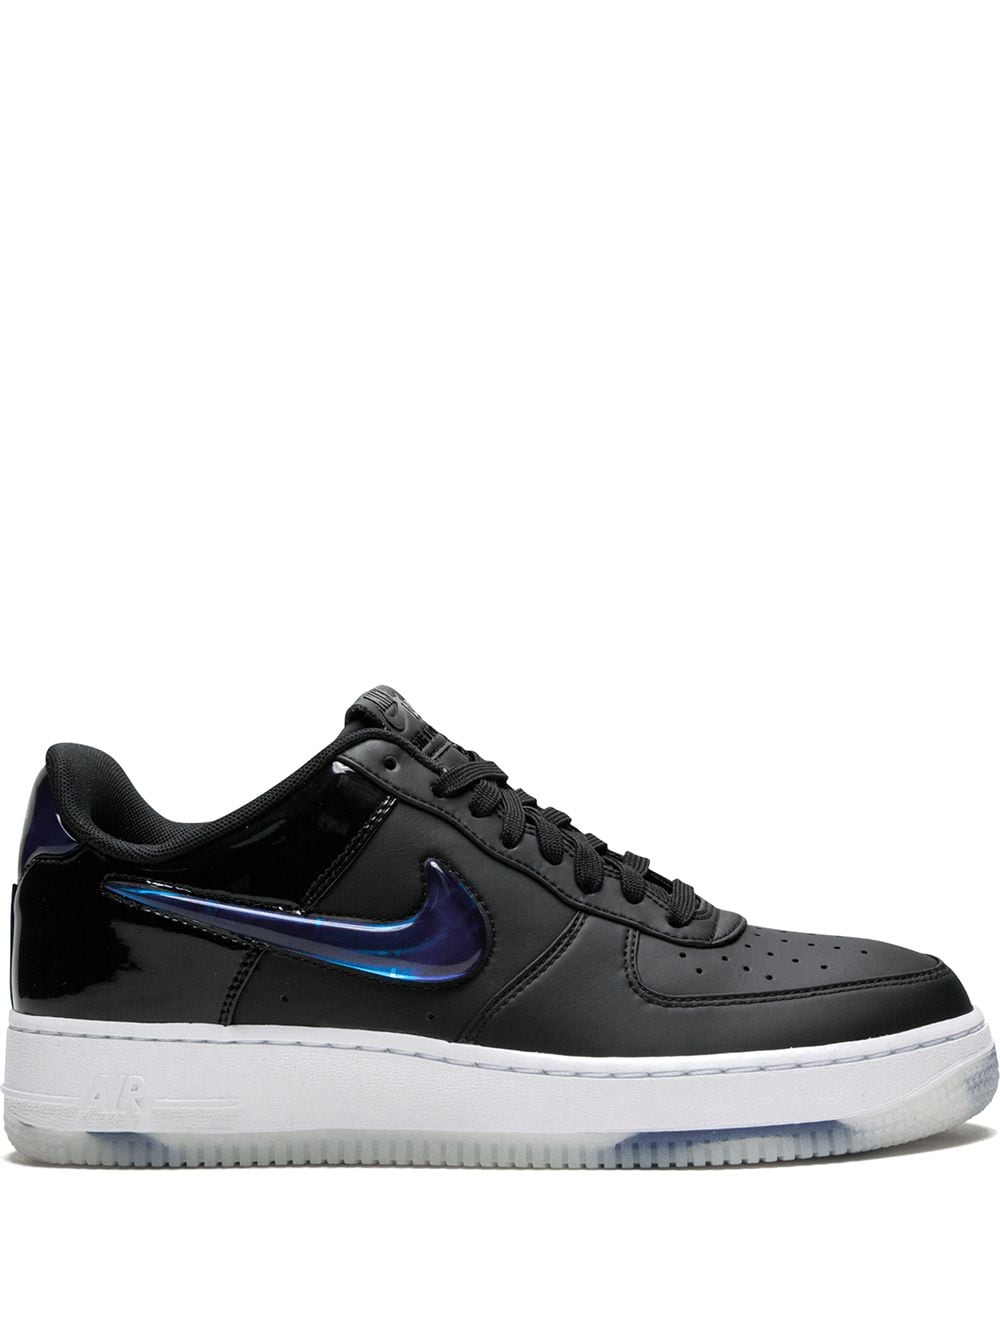 Shop black \u0026 white Nike Air Force 1 